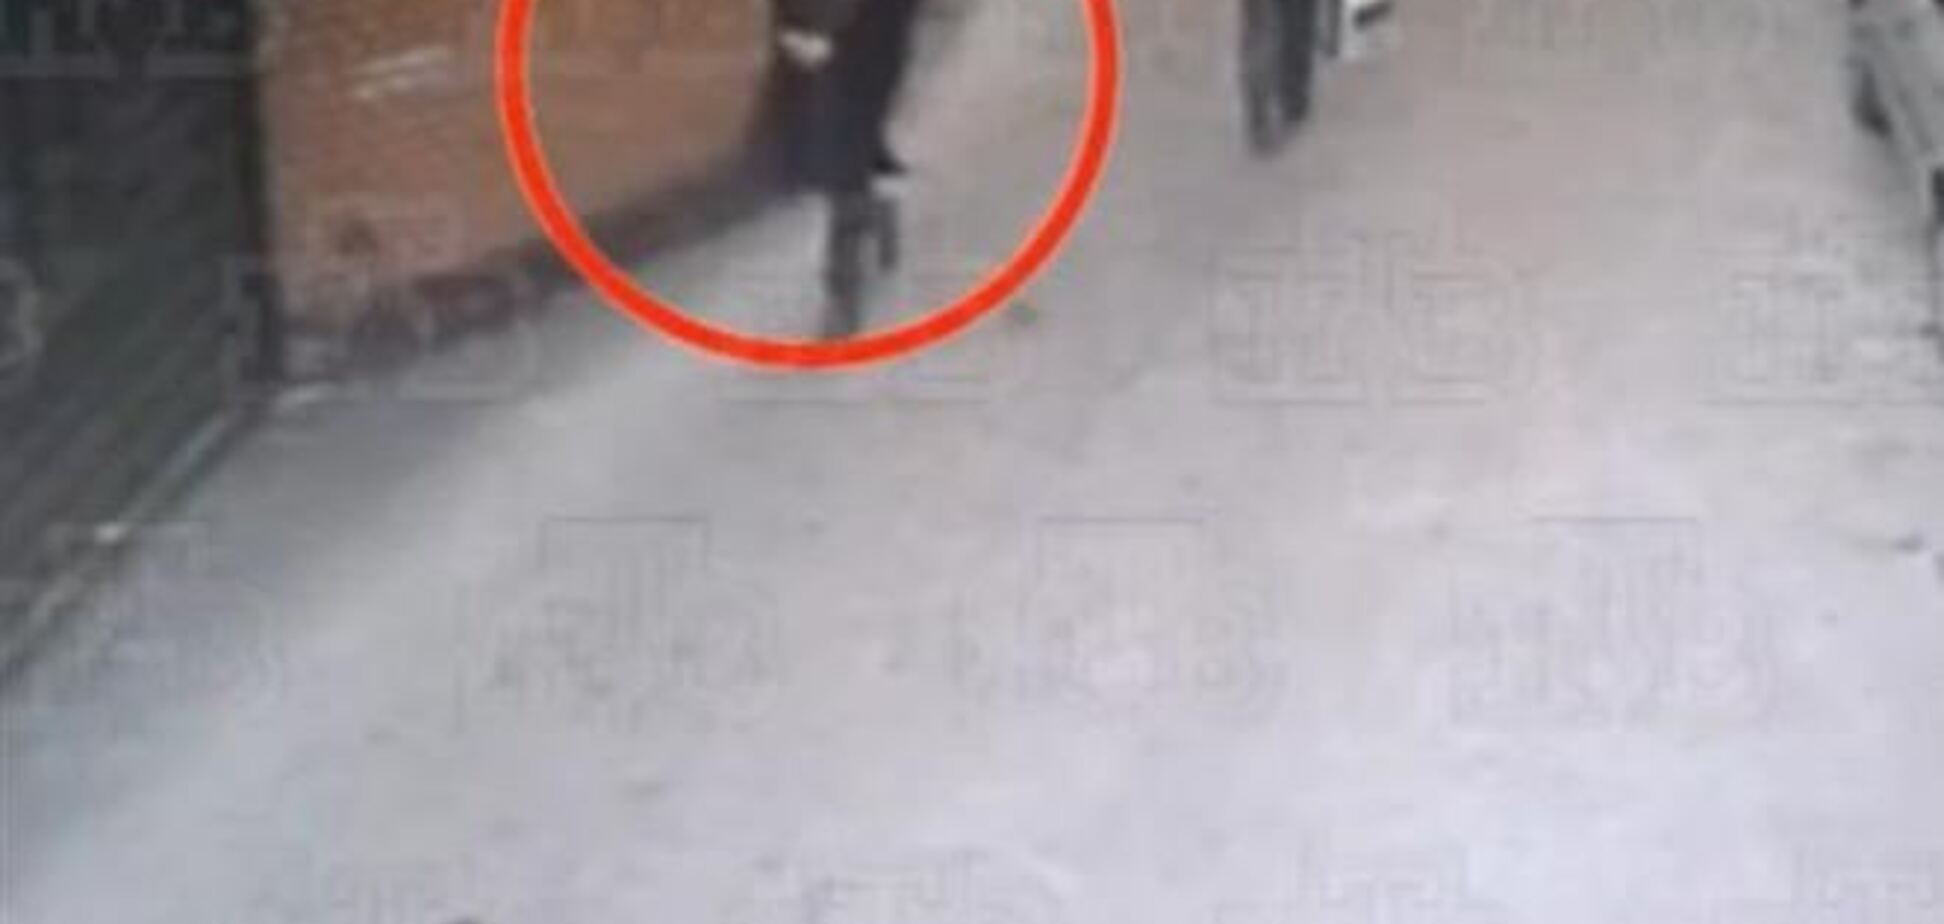 Обнародовано видео, где видно московского ученика-стрелка до момента стрельбы